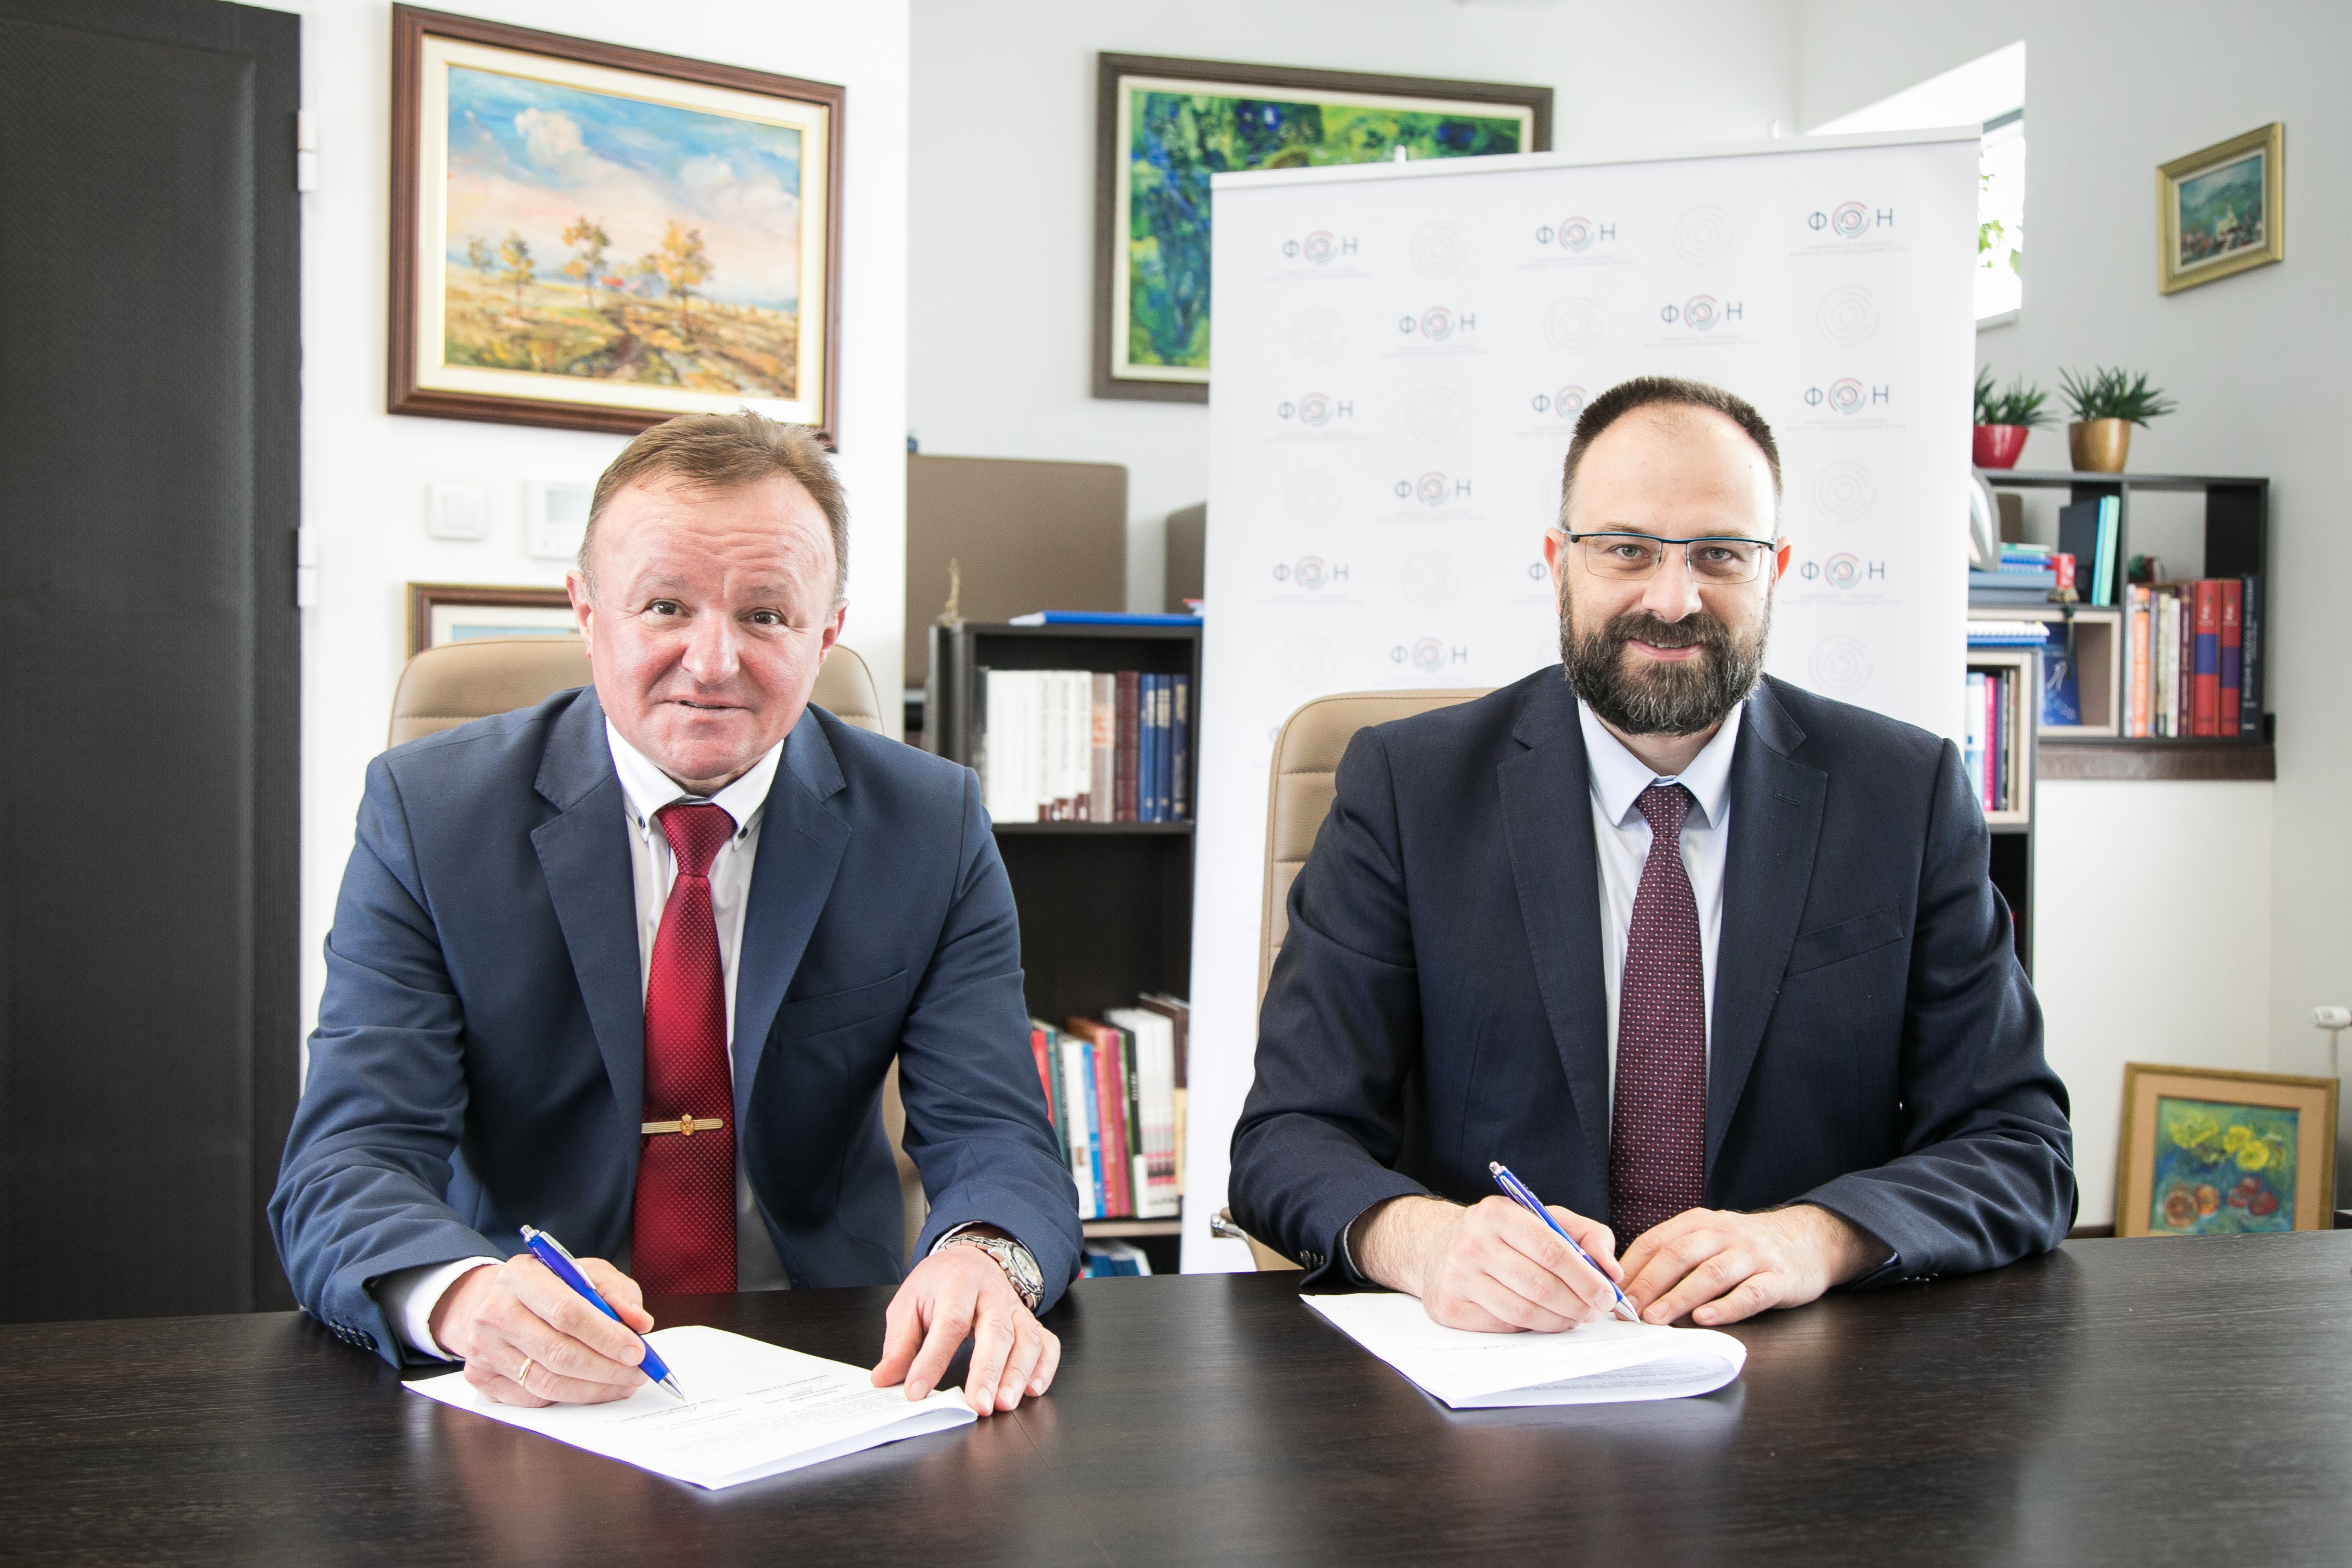 Потписан Споразум о сарадњи између ФОН-а и Националне академије за јавну управу